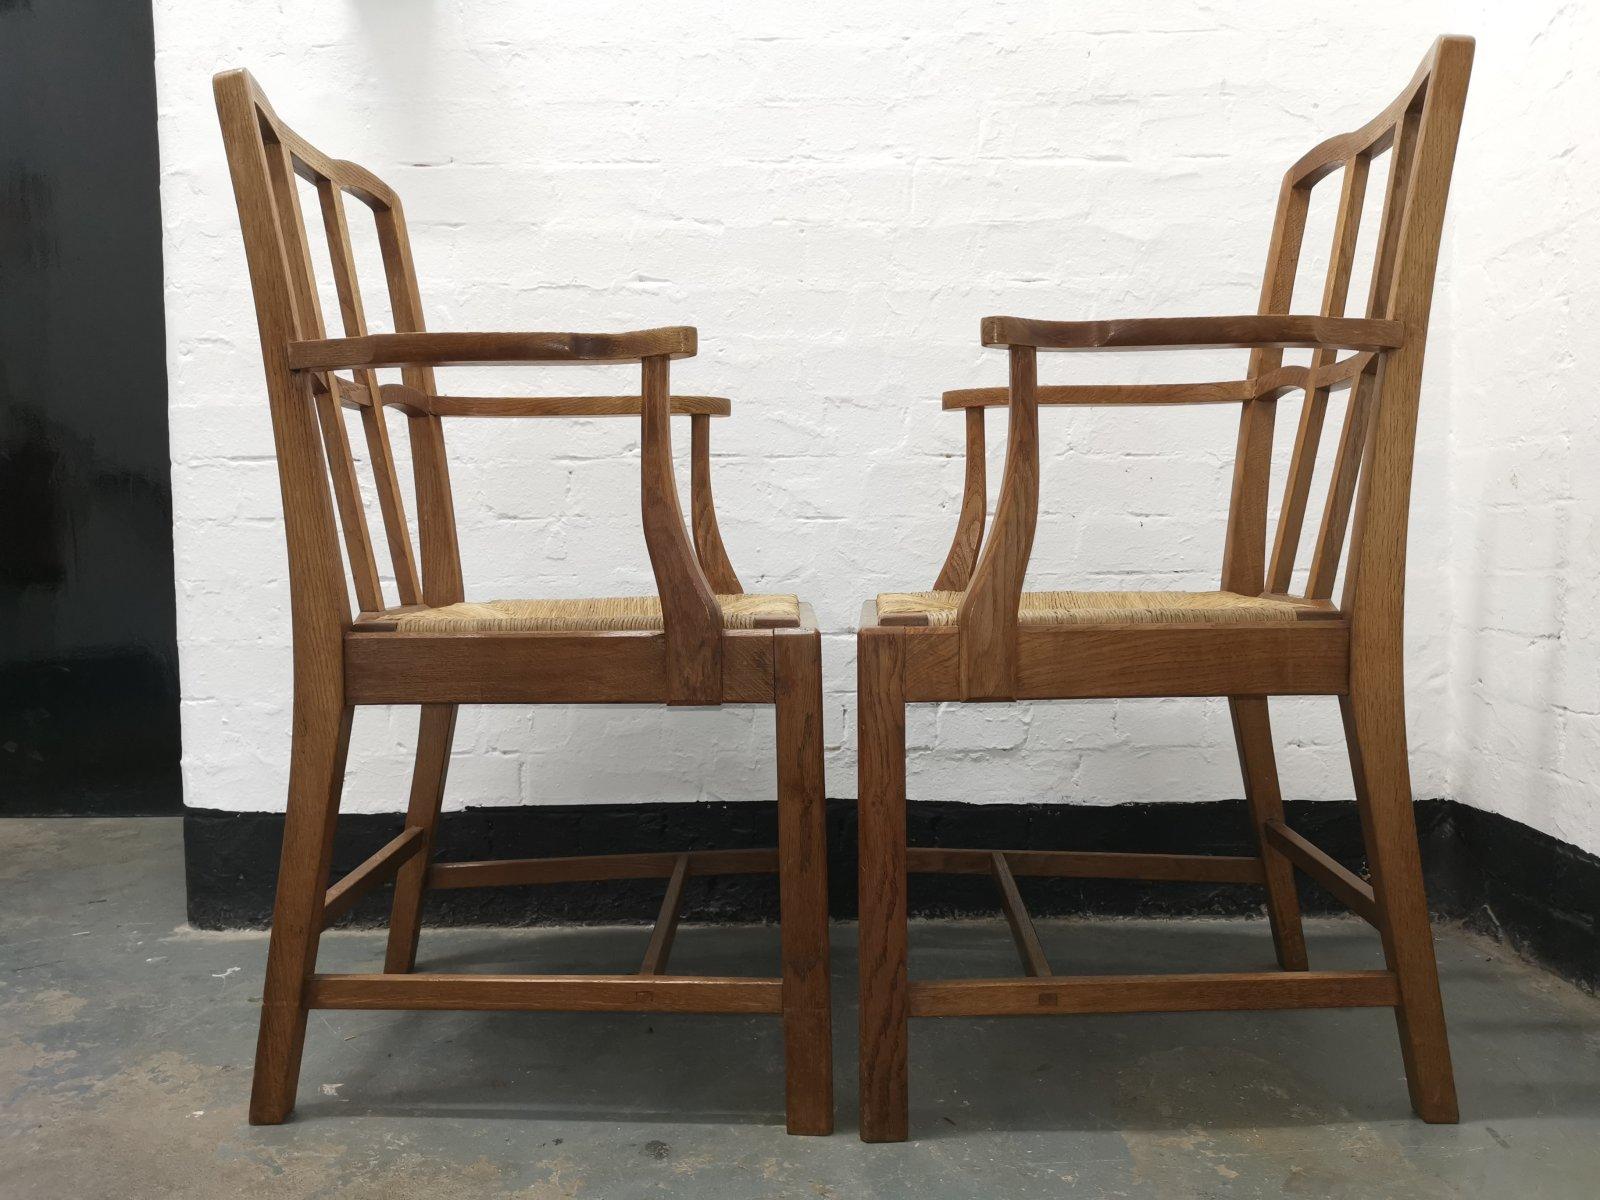 Paire de fauteuils en chêne à dossier en treillis de l'école anglaise de Cotswold Arts & Crafts, avec des arcs subtils au niveau des dossiers en treillis, des accoudoirs en forme, et une construction à chevilles conservant les sièges en jonc